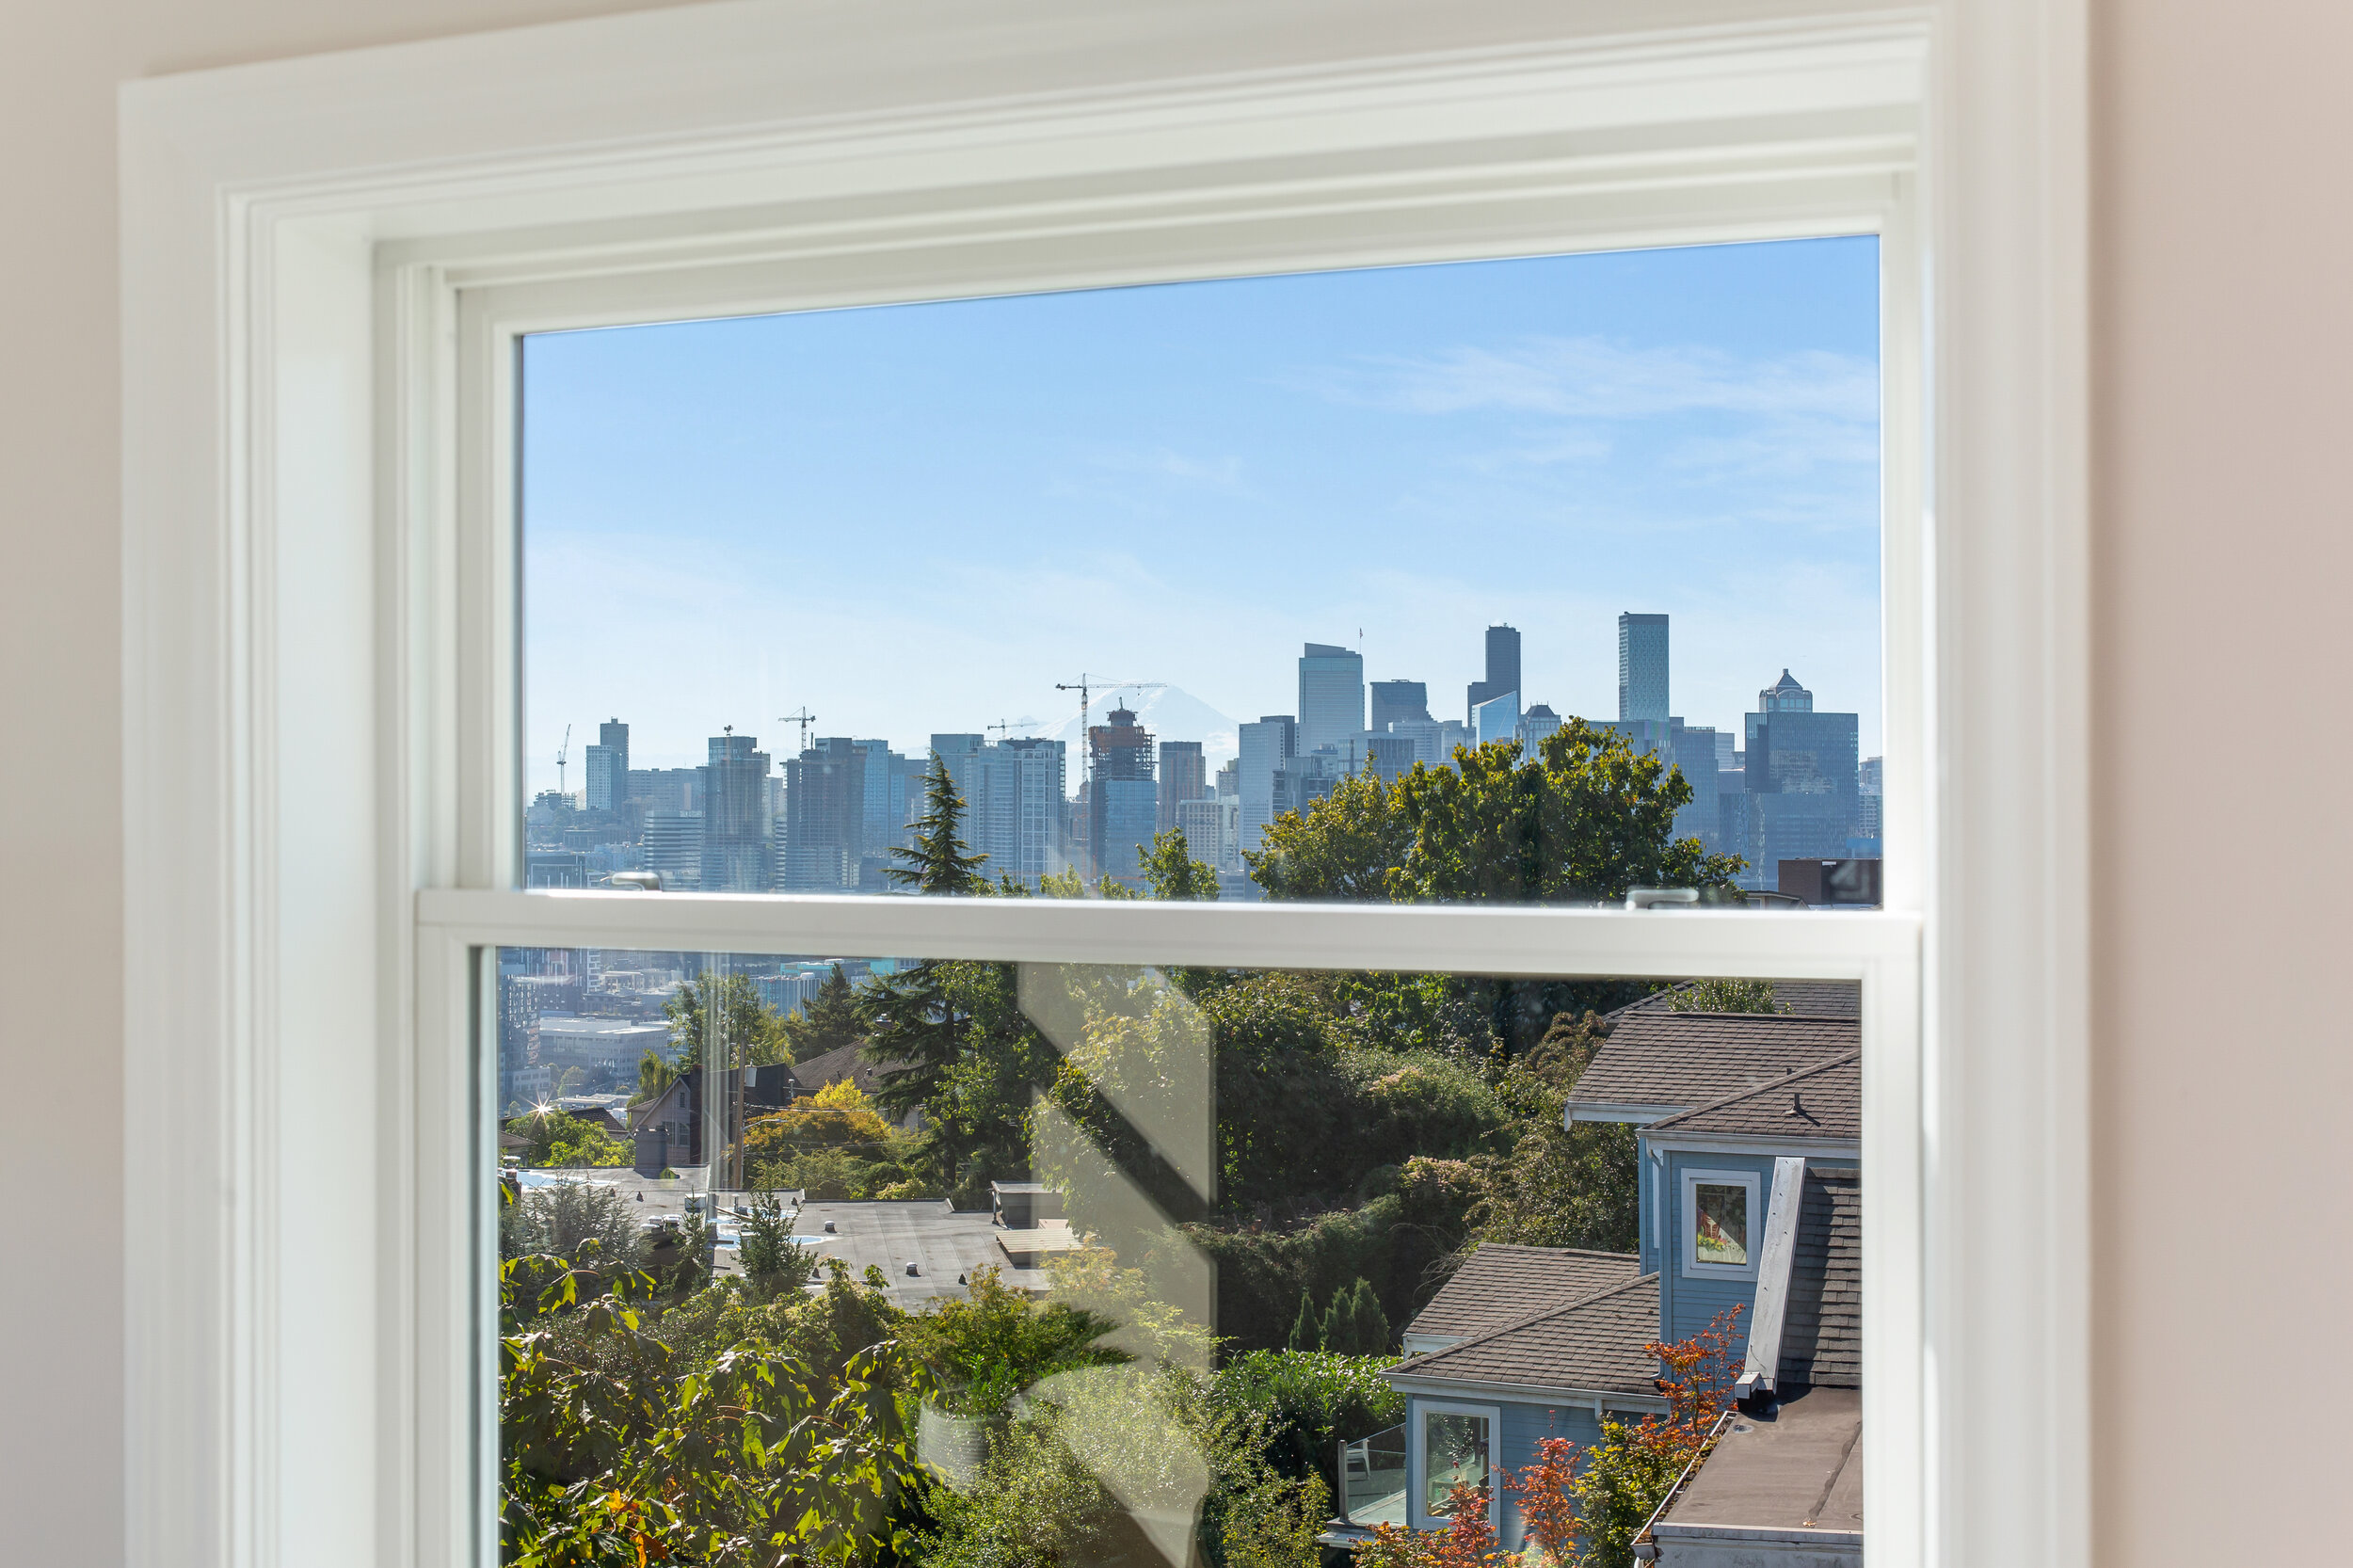  image description: view of neighborhood from bedroom window 